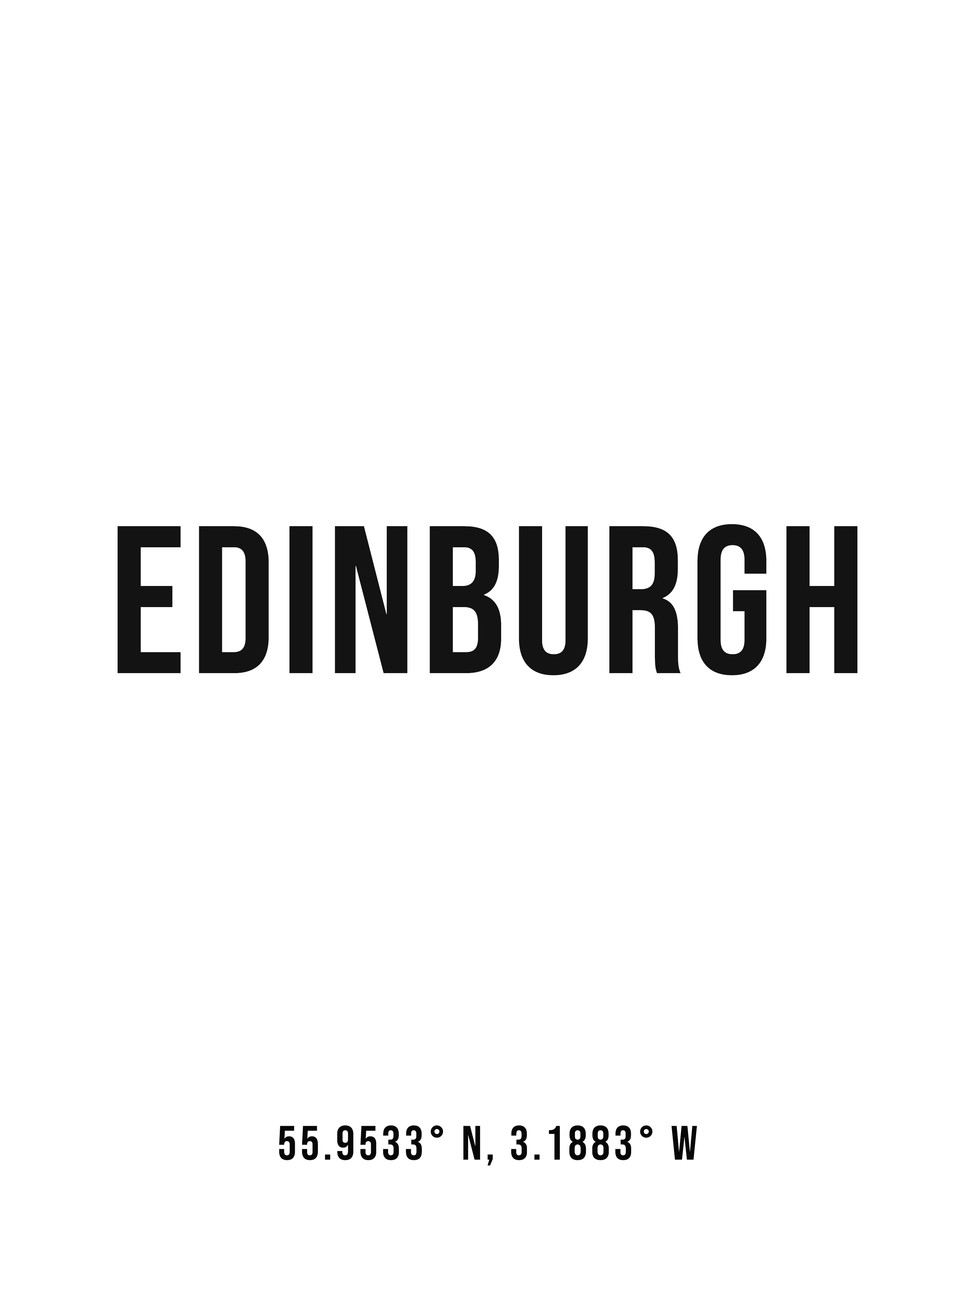 Illustration Edinburgh simple coordinates